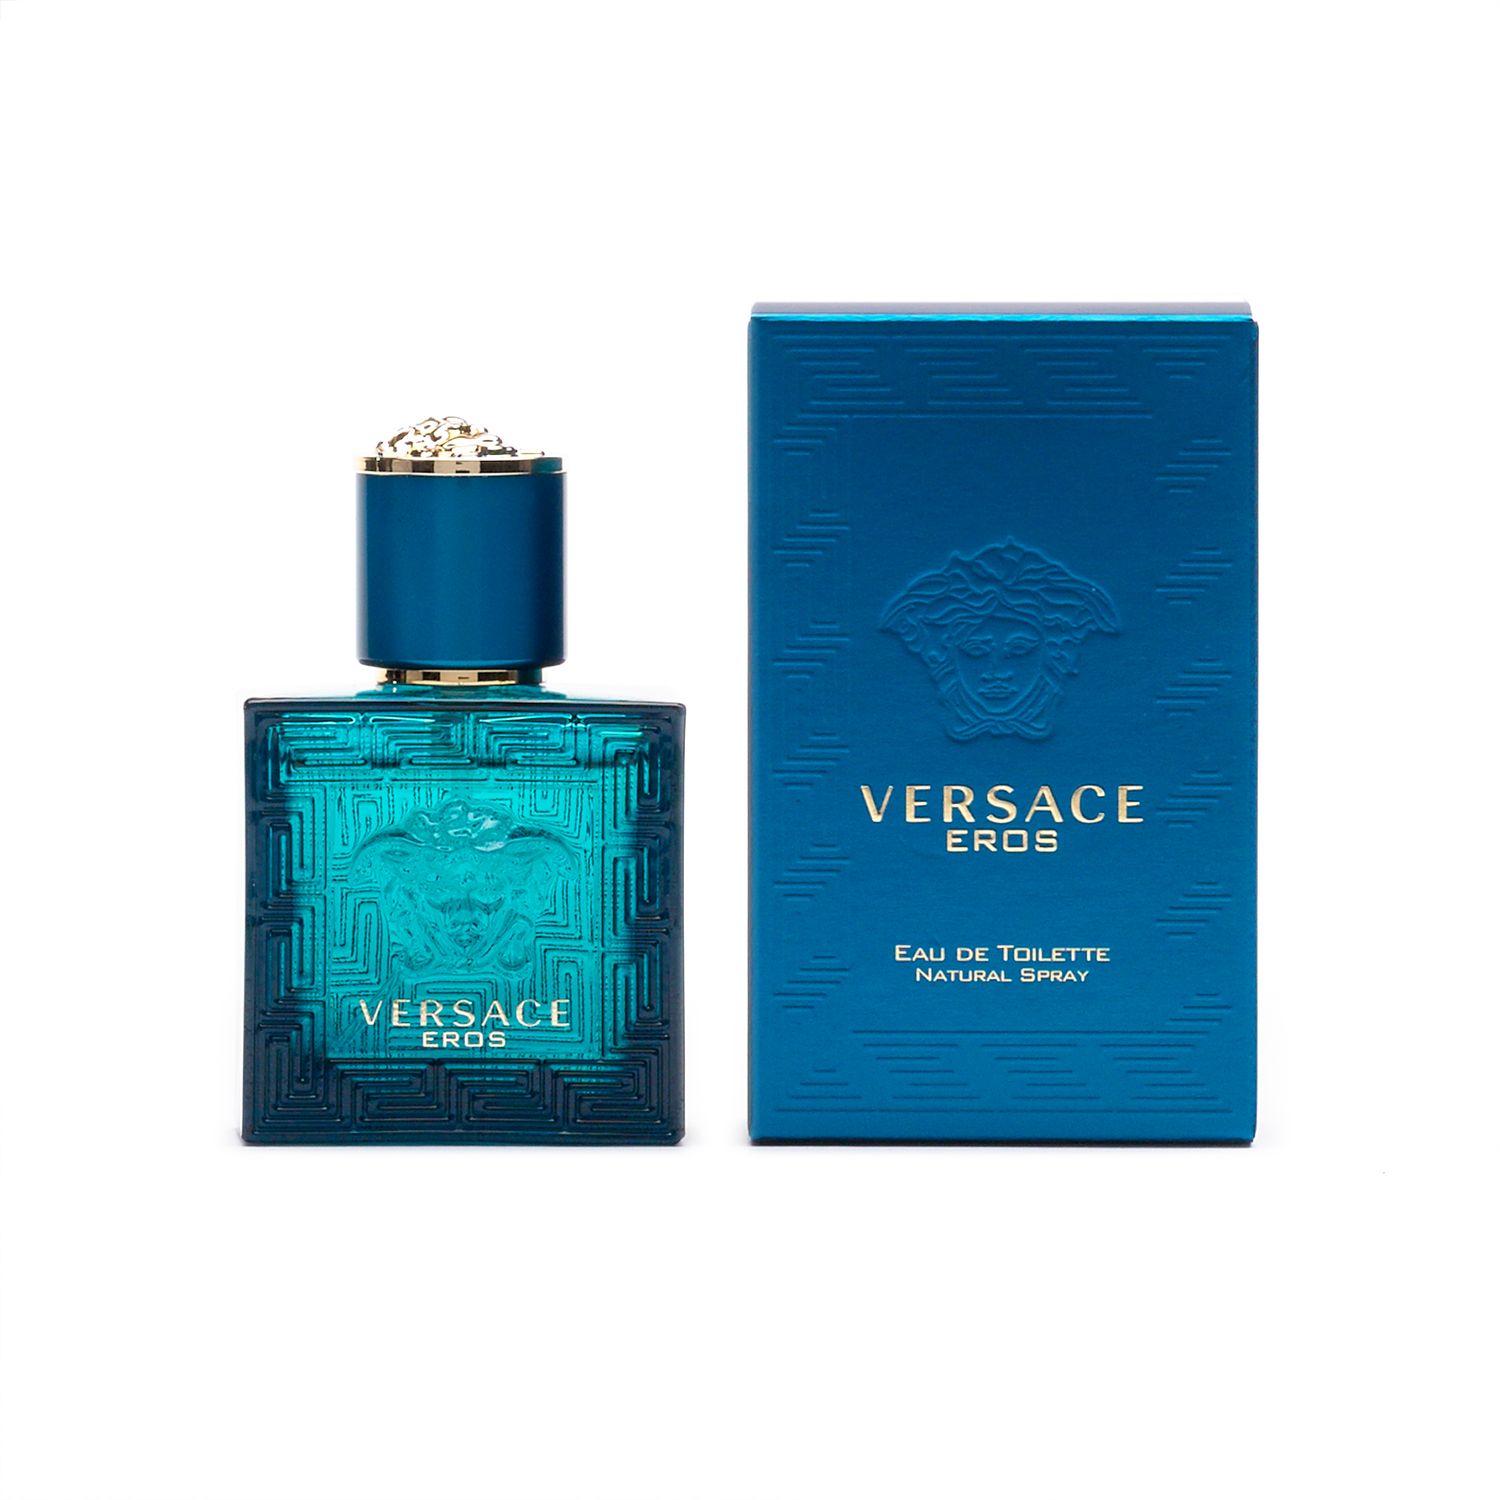 Versace Eros Men's Cologne - Eau de 